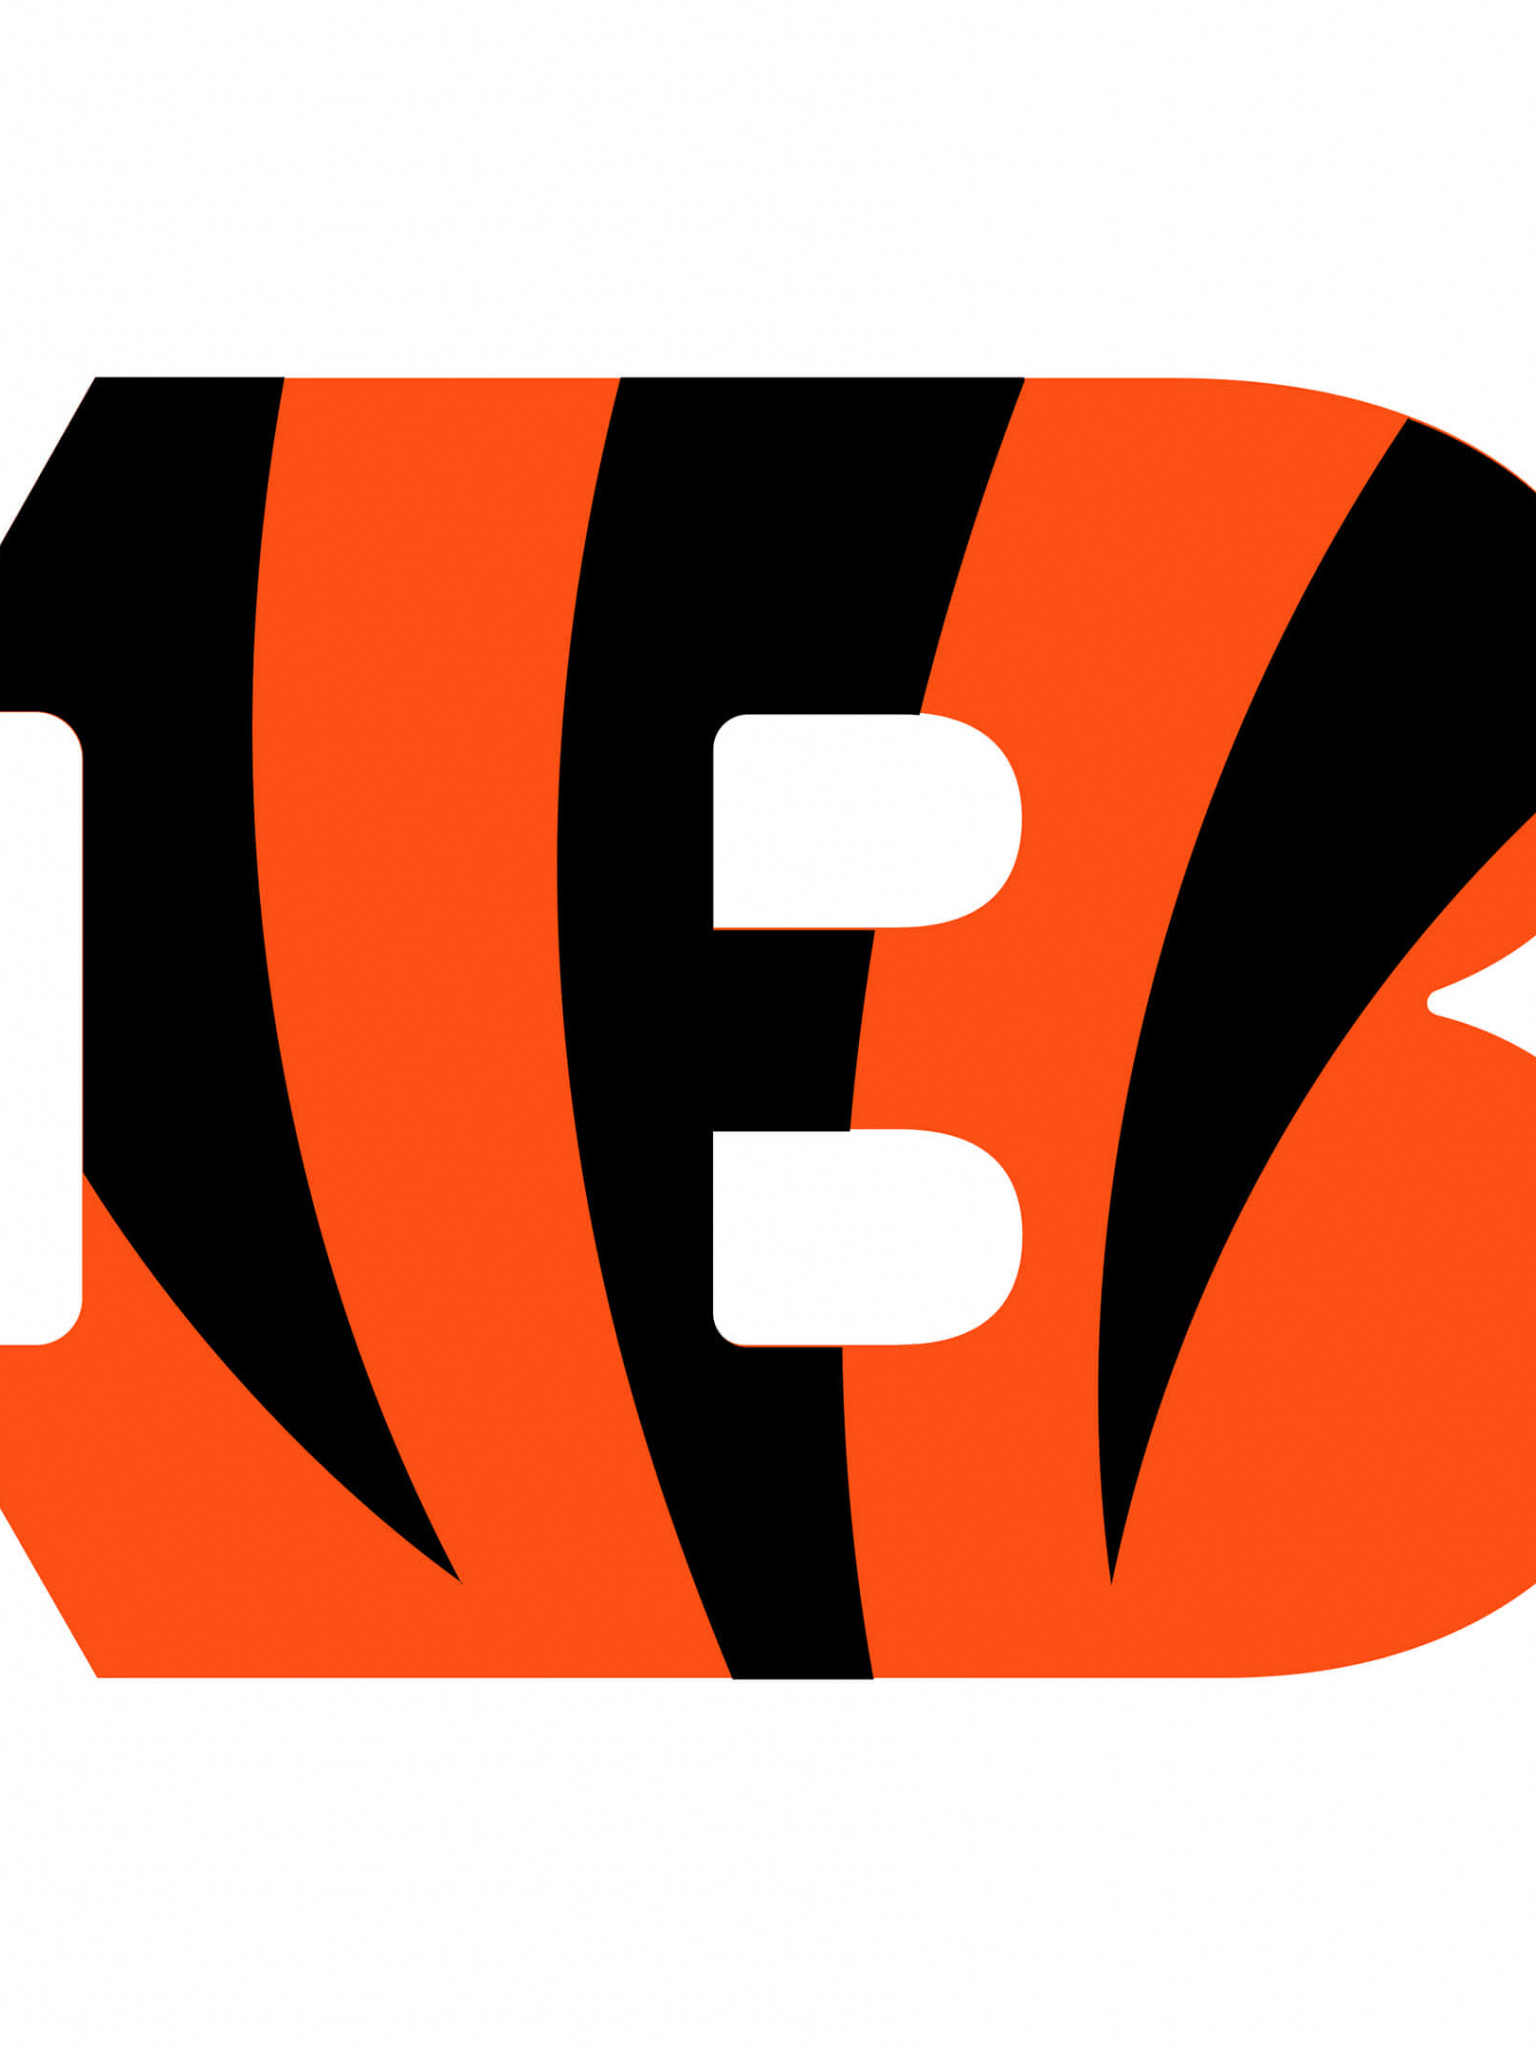 Cincinnati Bengals, NFL logo, UHD 4K wallpaper, Team representation, 1540x2050 HD Phone